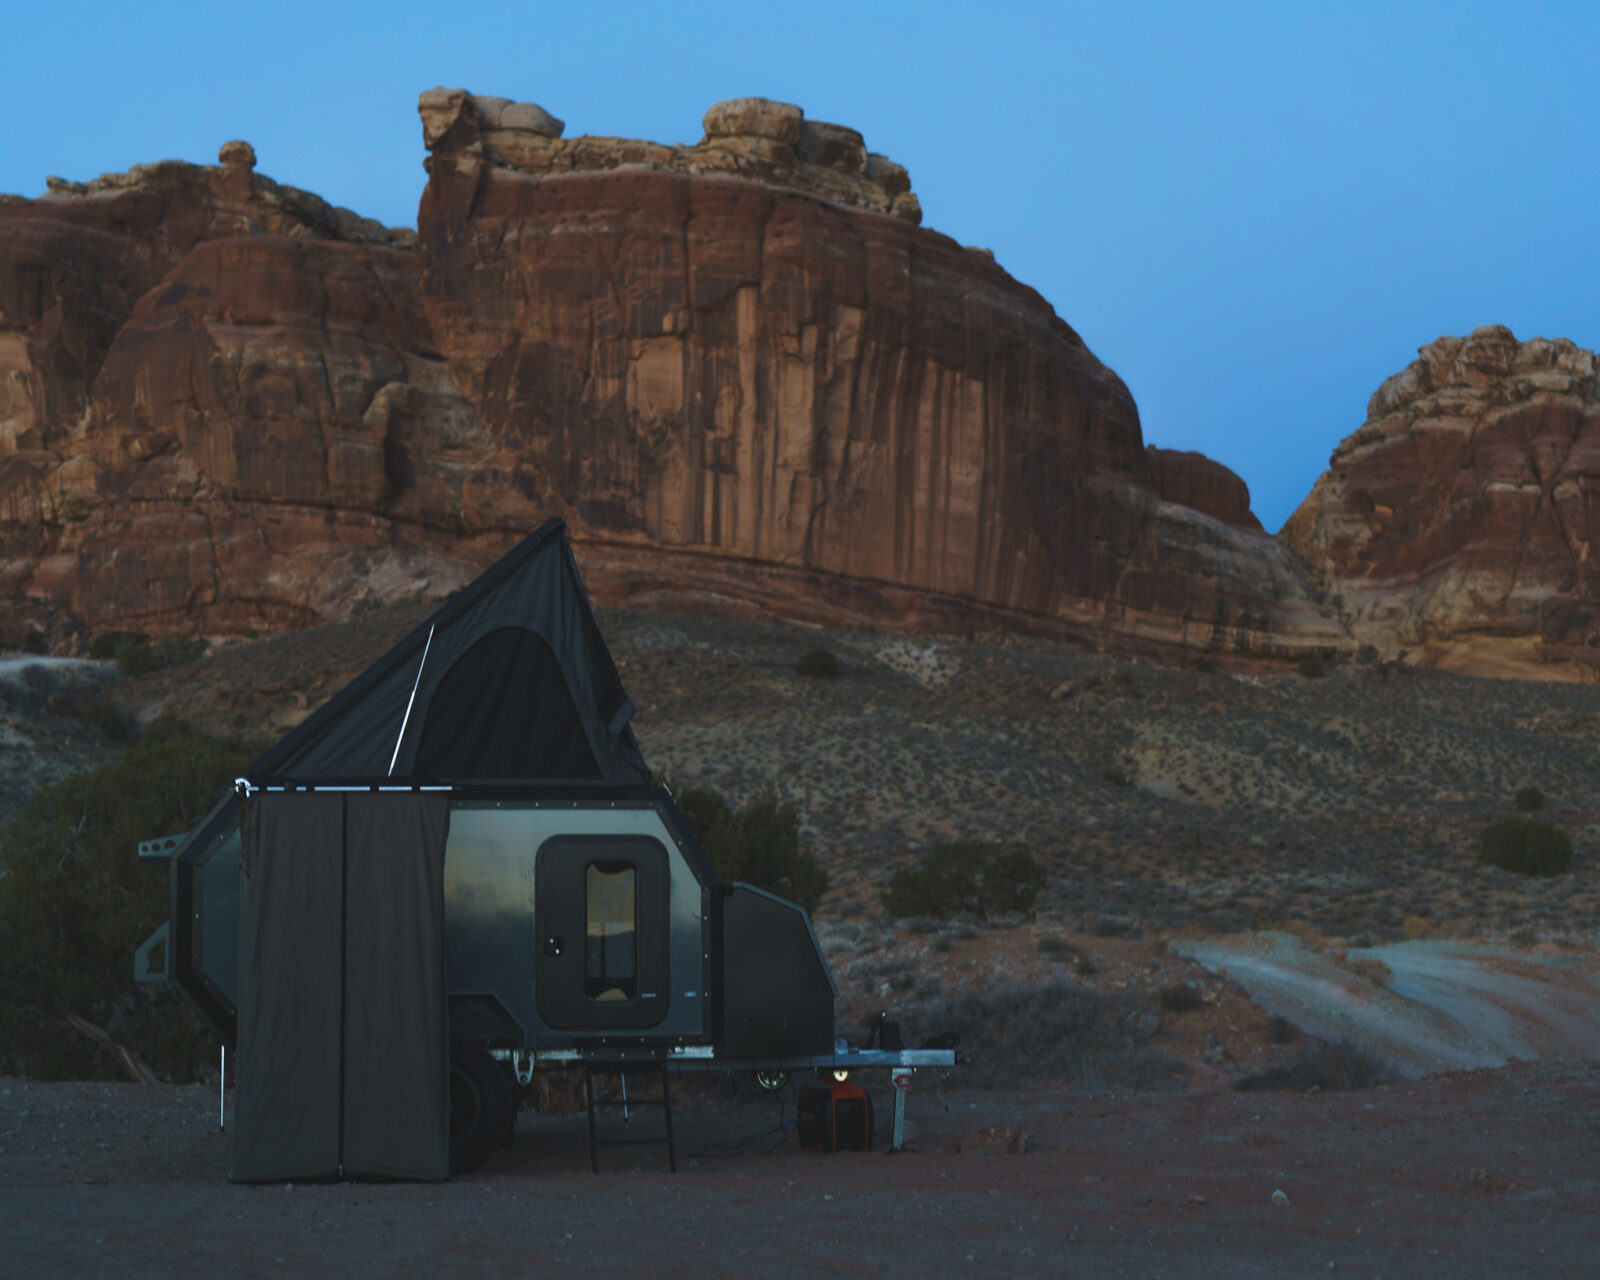 off-road pop up camper in a desert terrain